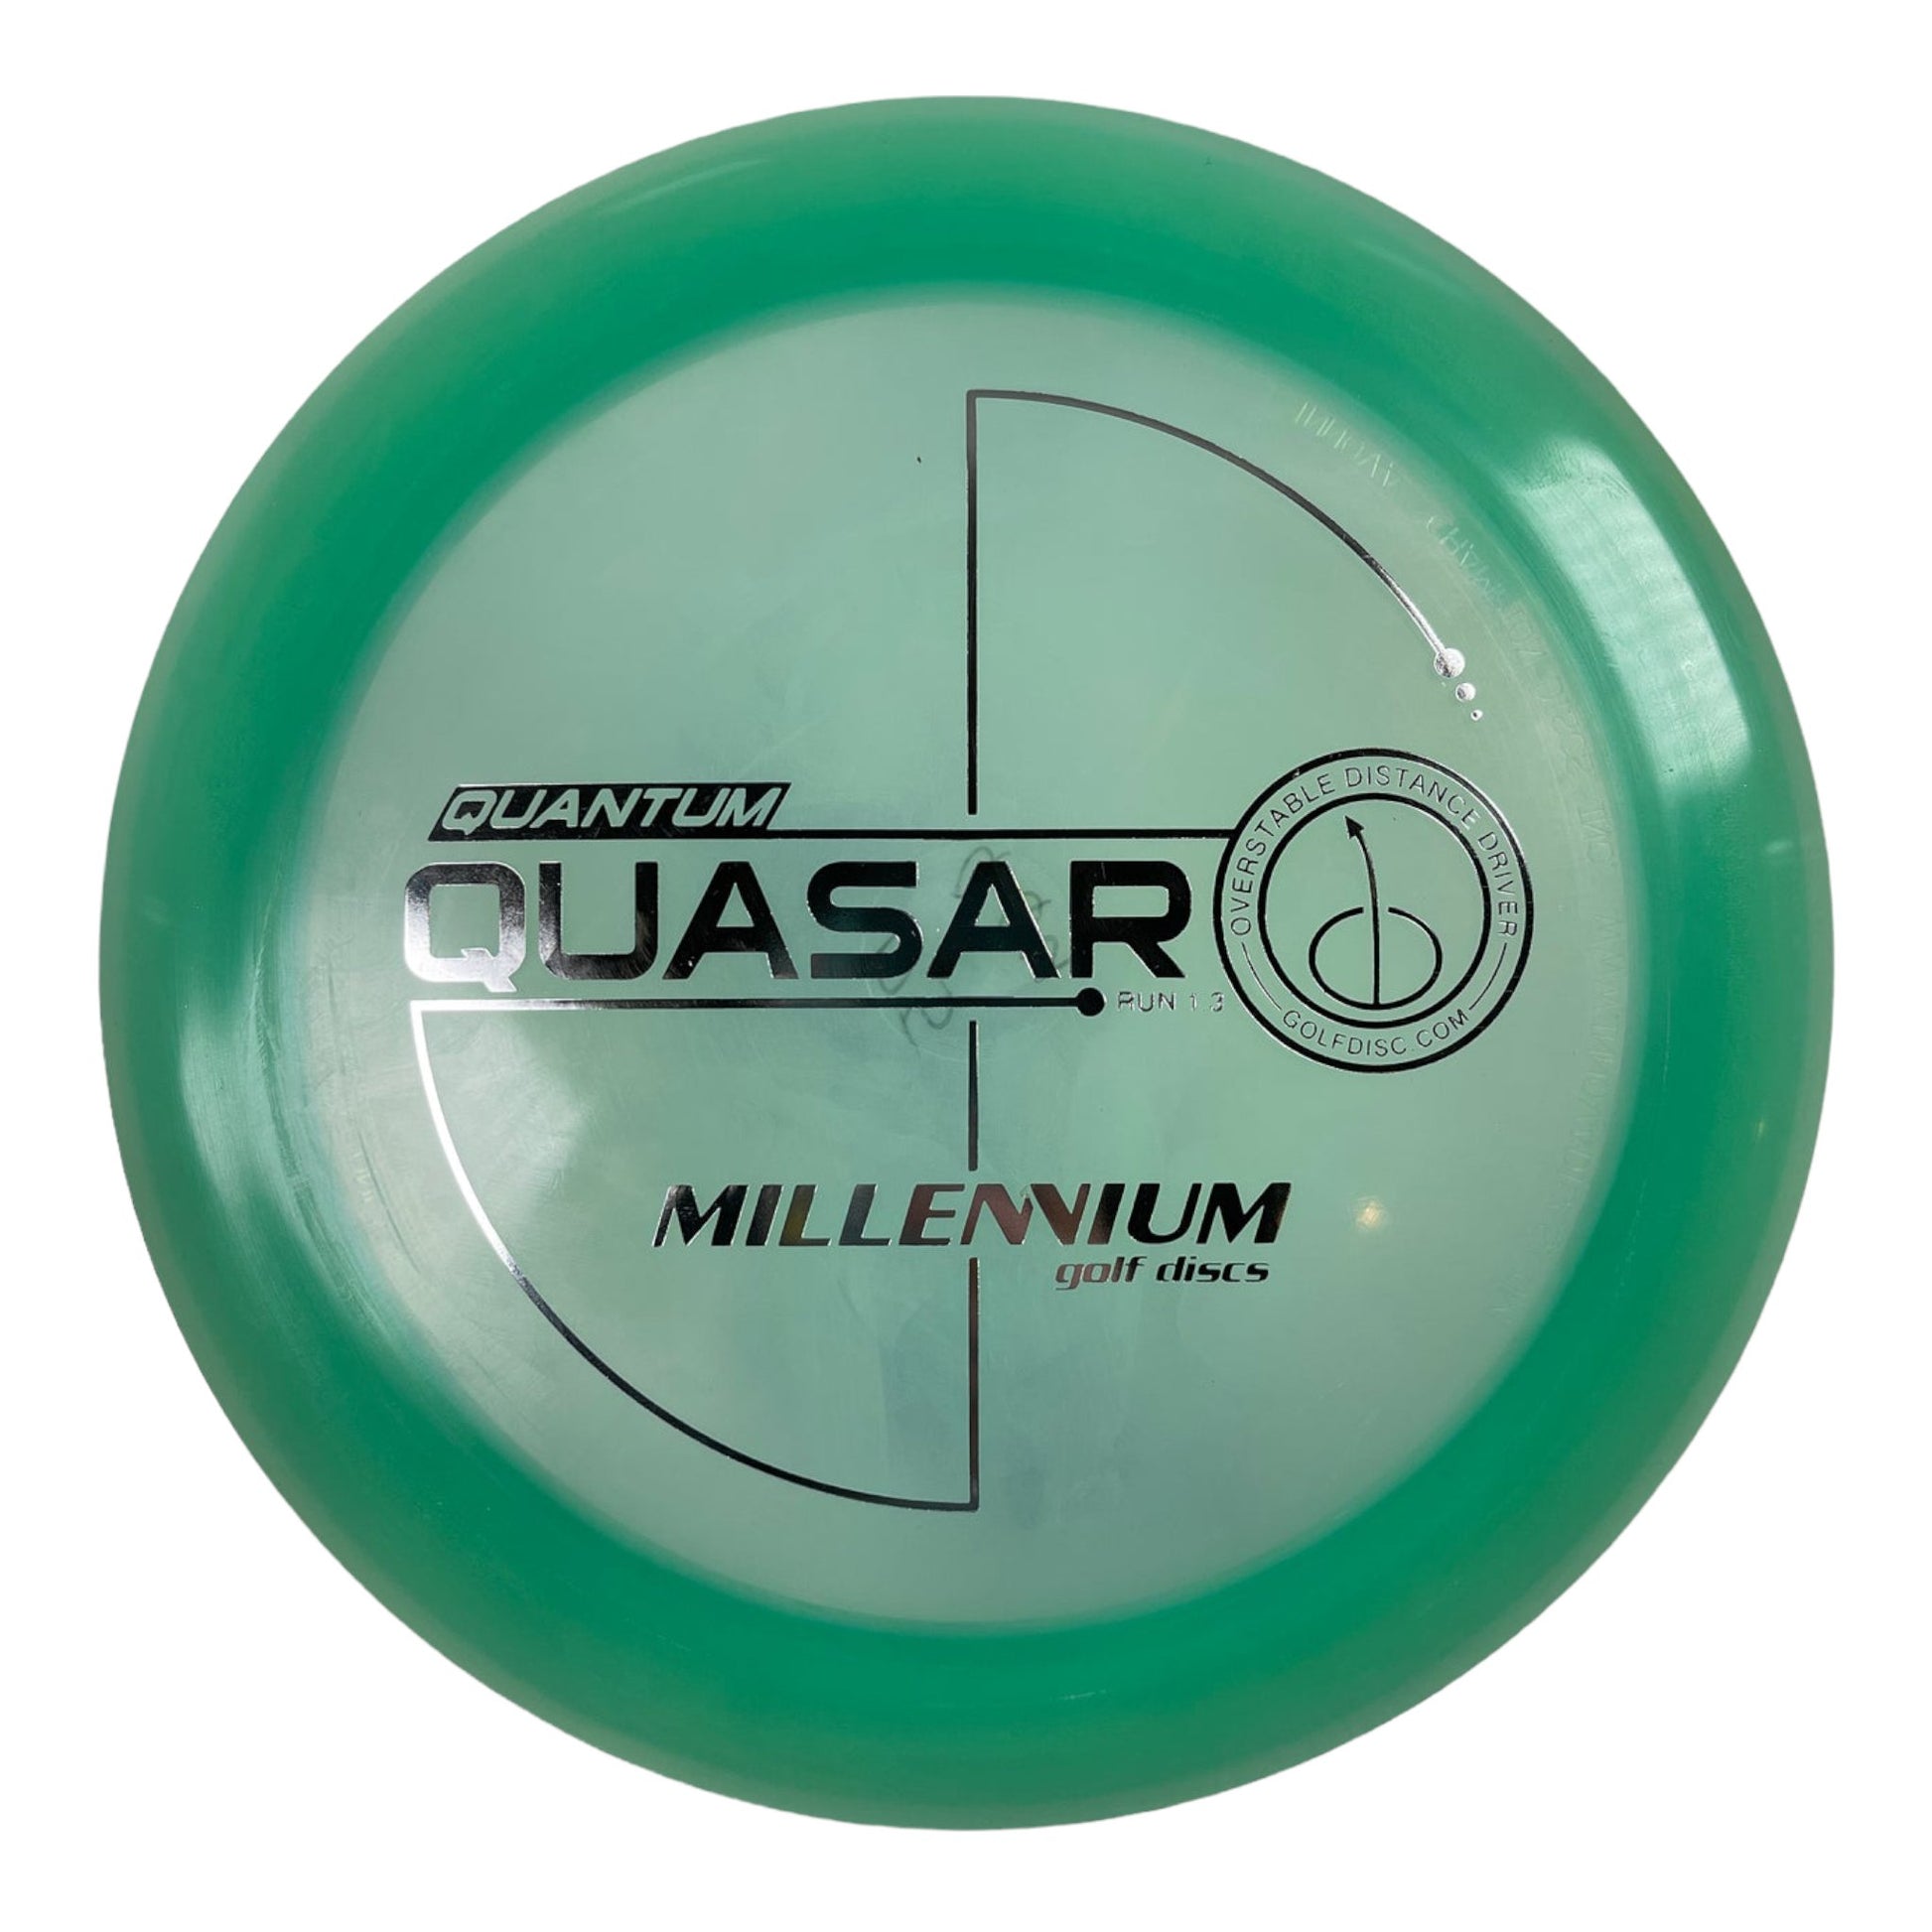 Millennium Golf Discs Quasar | Quantum | Aqua/Silver 175g Disc Golf